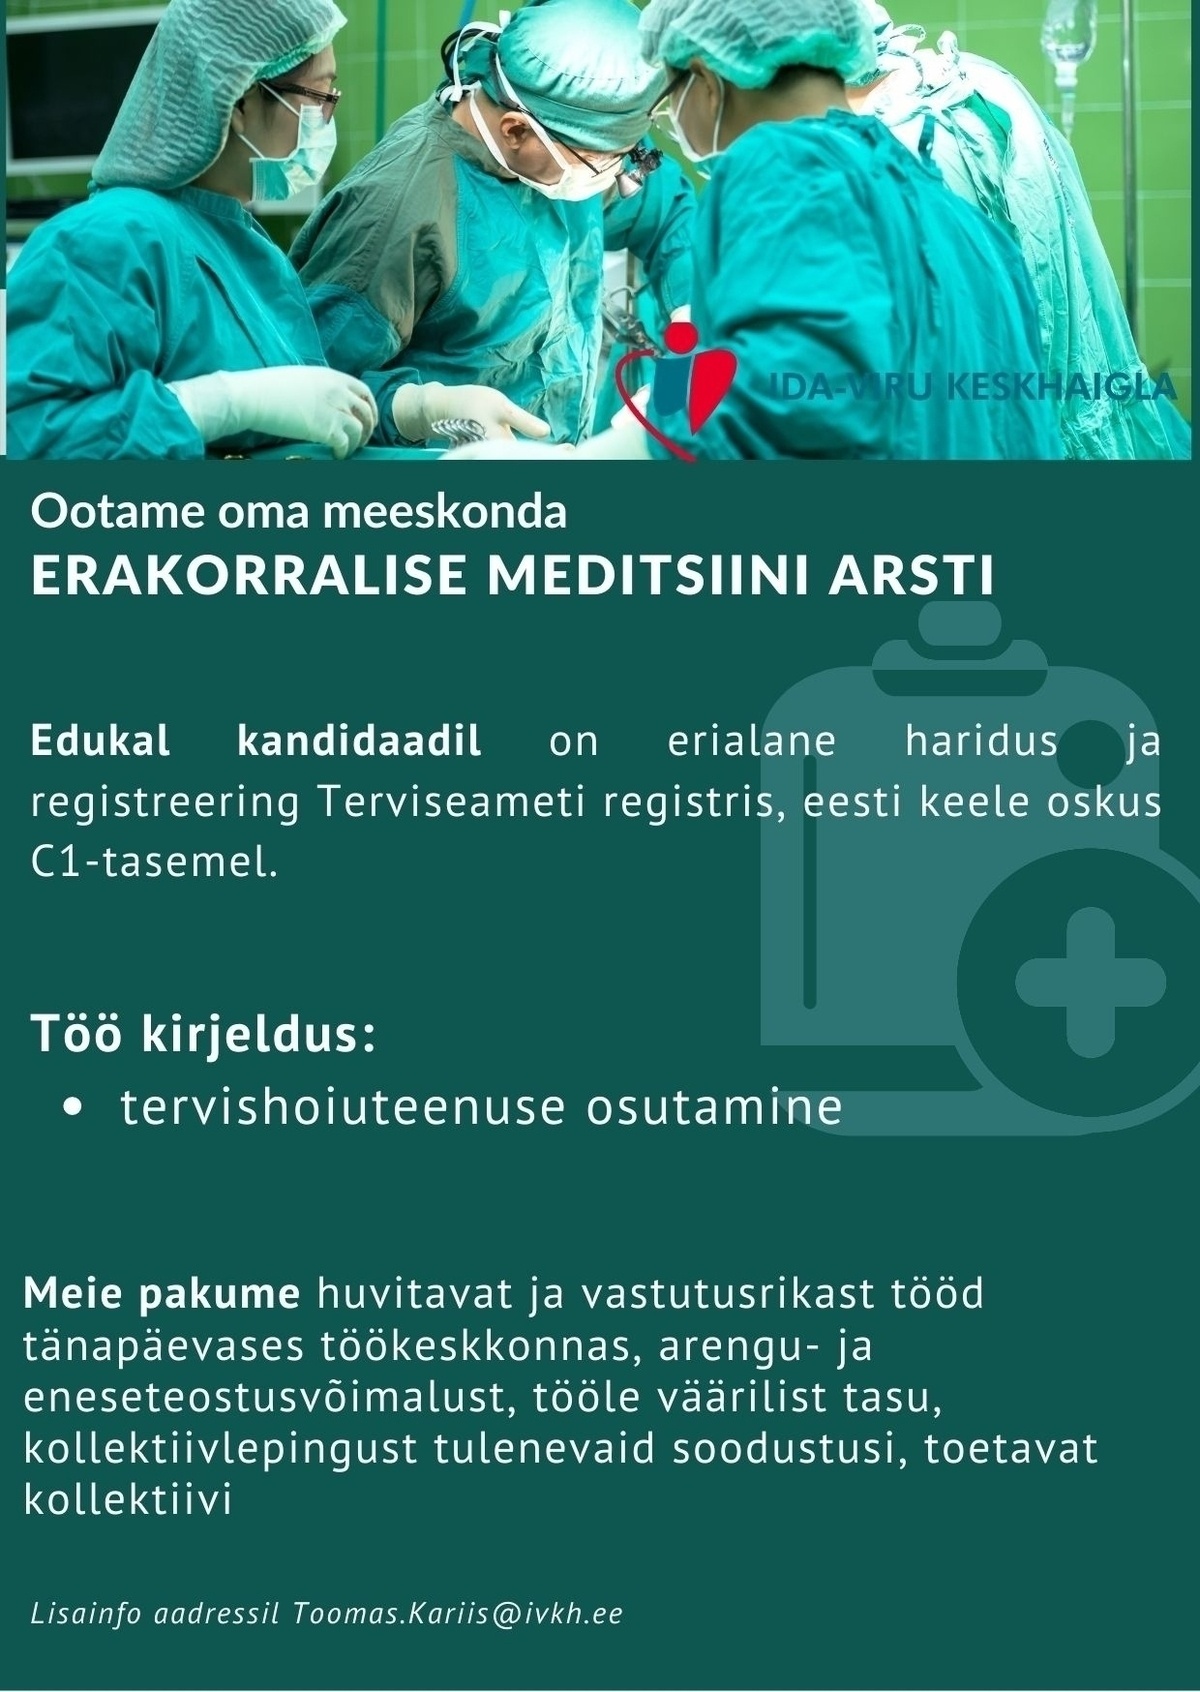 Ida-Viru Keskhaigla SA Erakorralise meditsiini arst